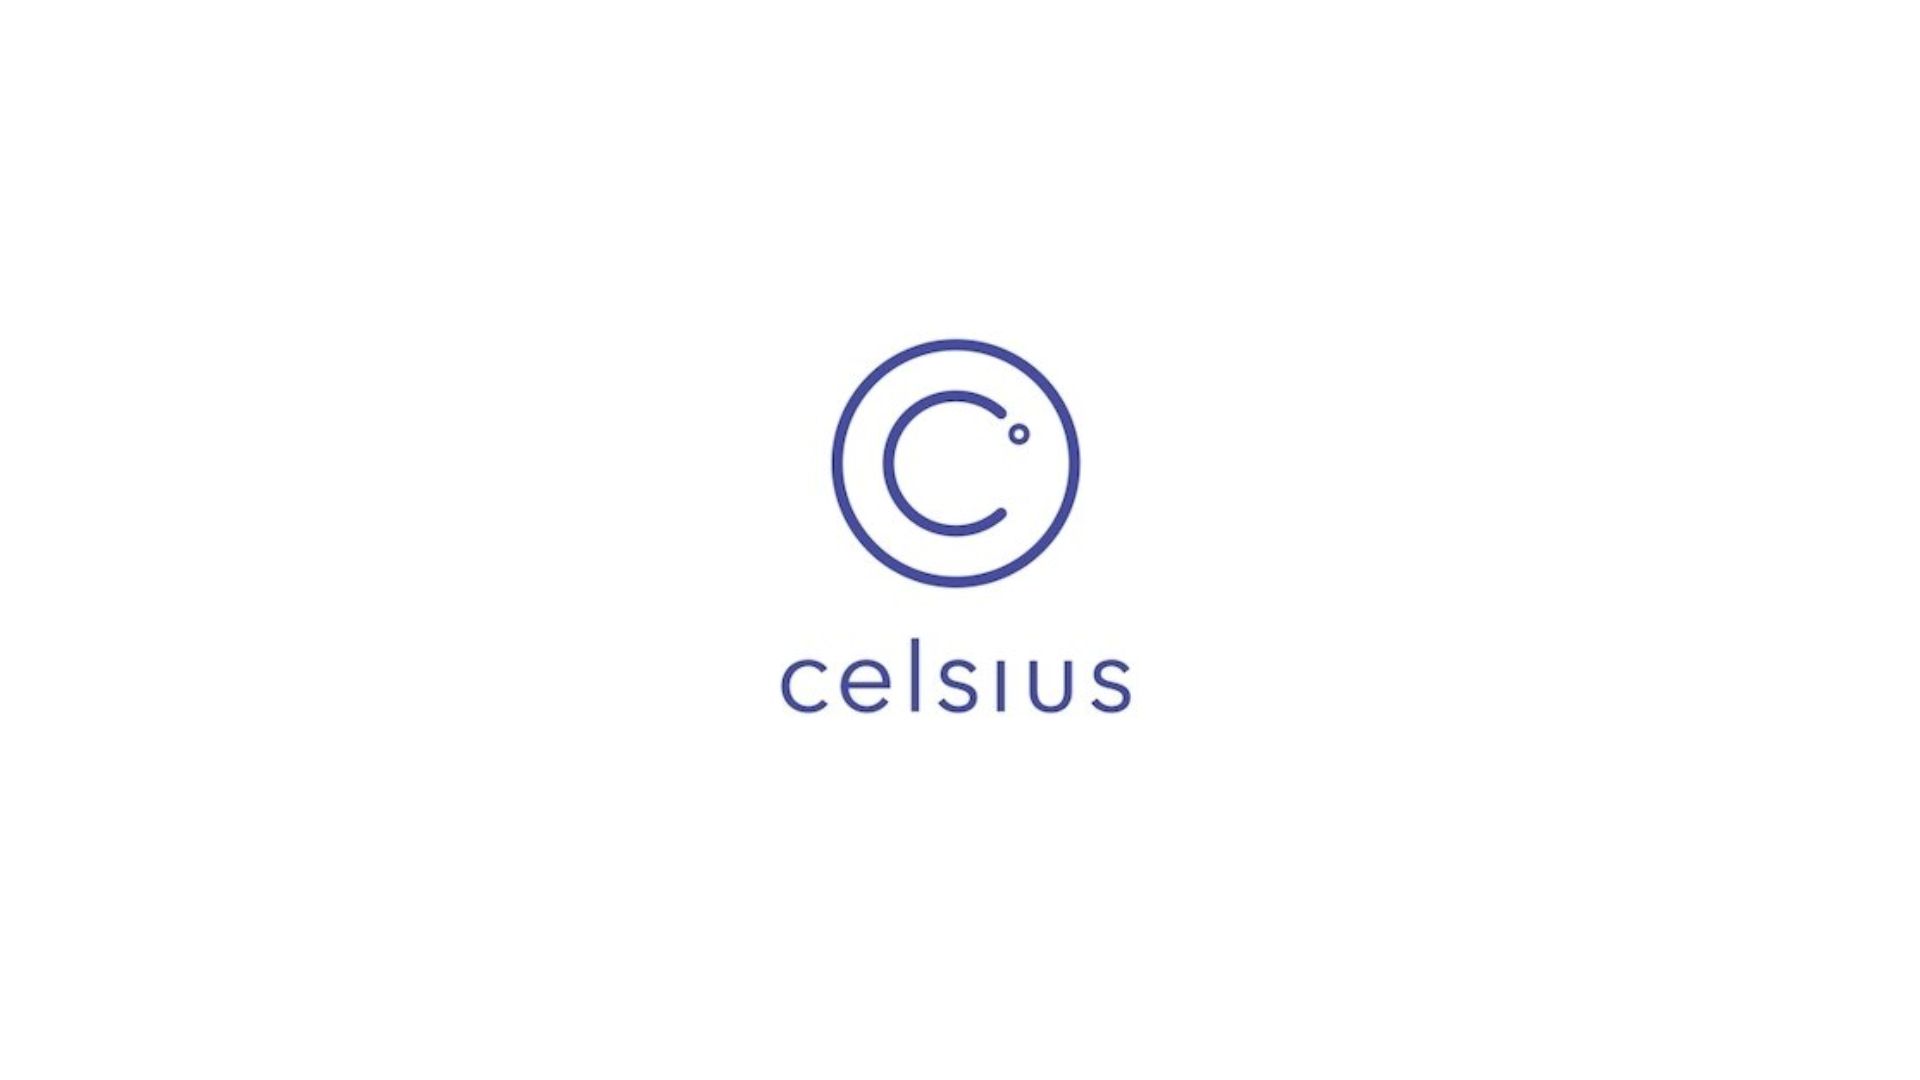 Celsius price